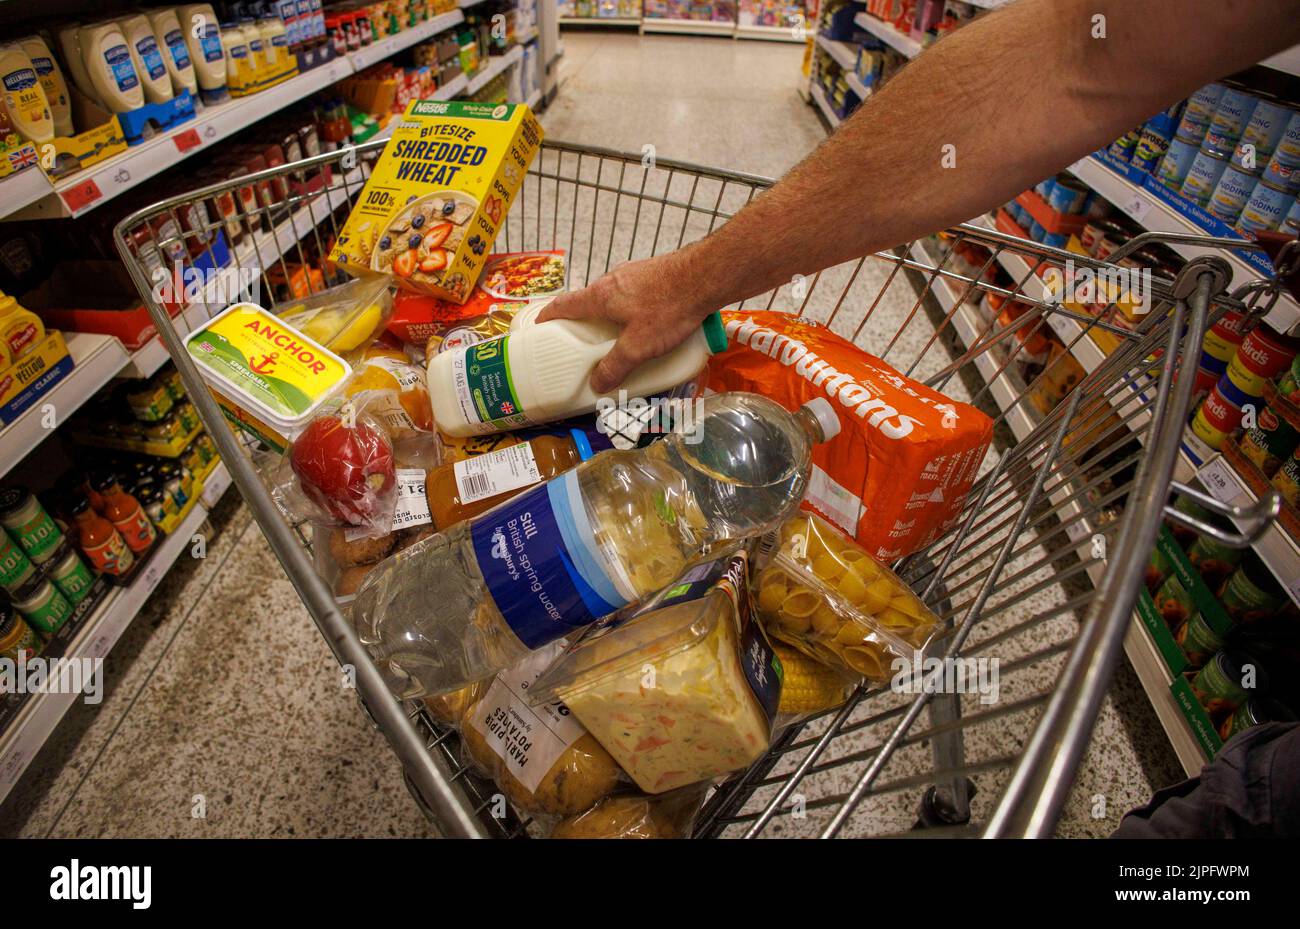 Lebensmittel in Supermärkten und allgemeine Lebensmittel wie Nudeln, Getreide und Öl, da die Lebenshaltungskosten-Krise zu einem dramatischen Anstieg der Lebensmittelpreise und Energiekosten geführt hat Stockfoto